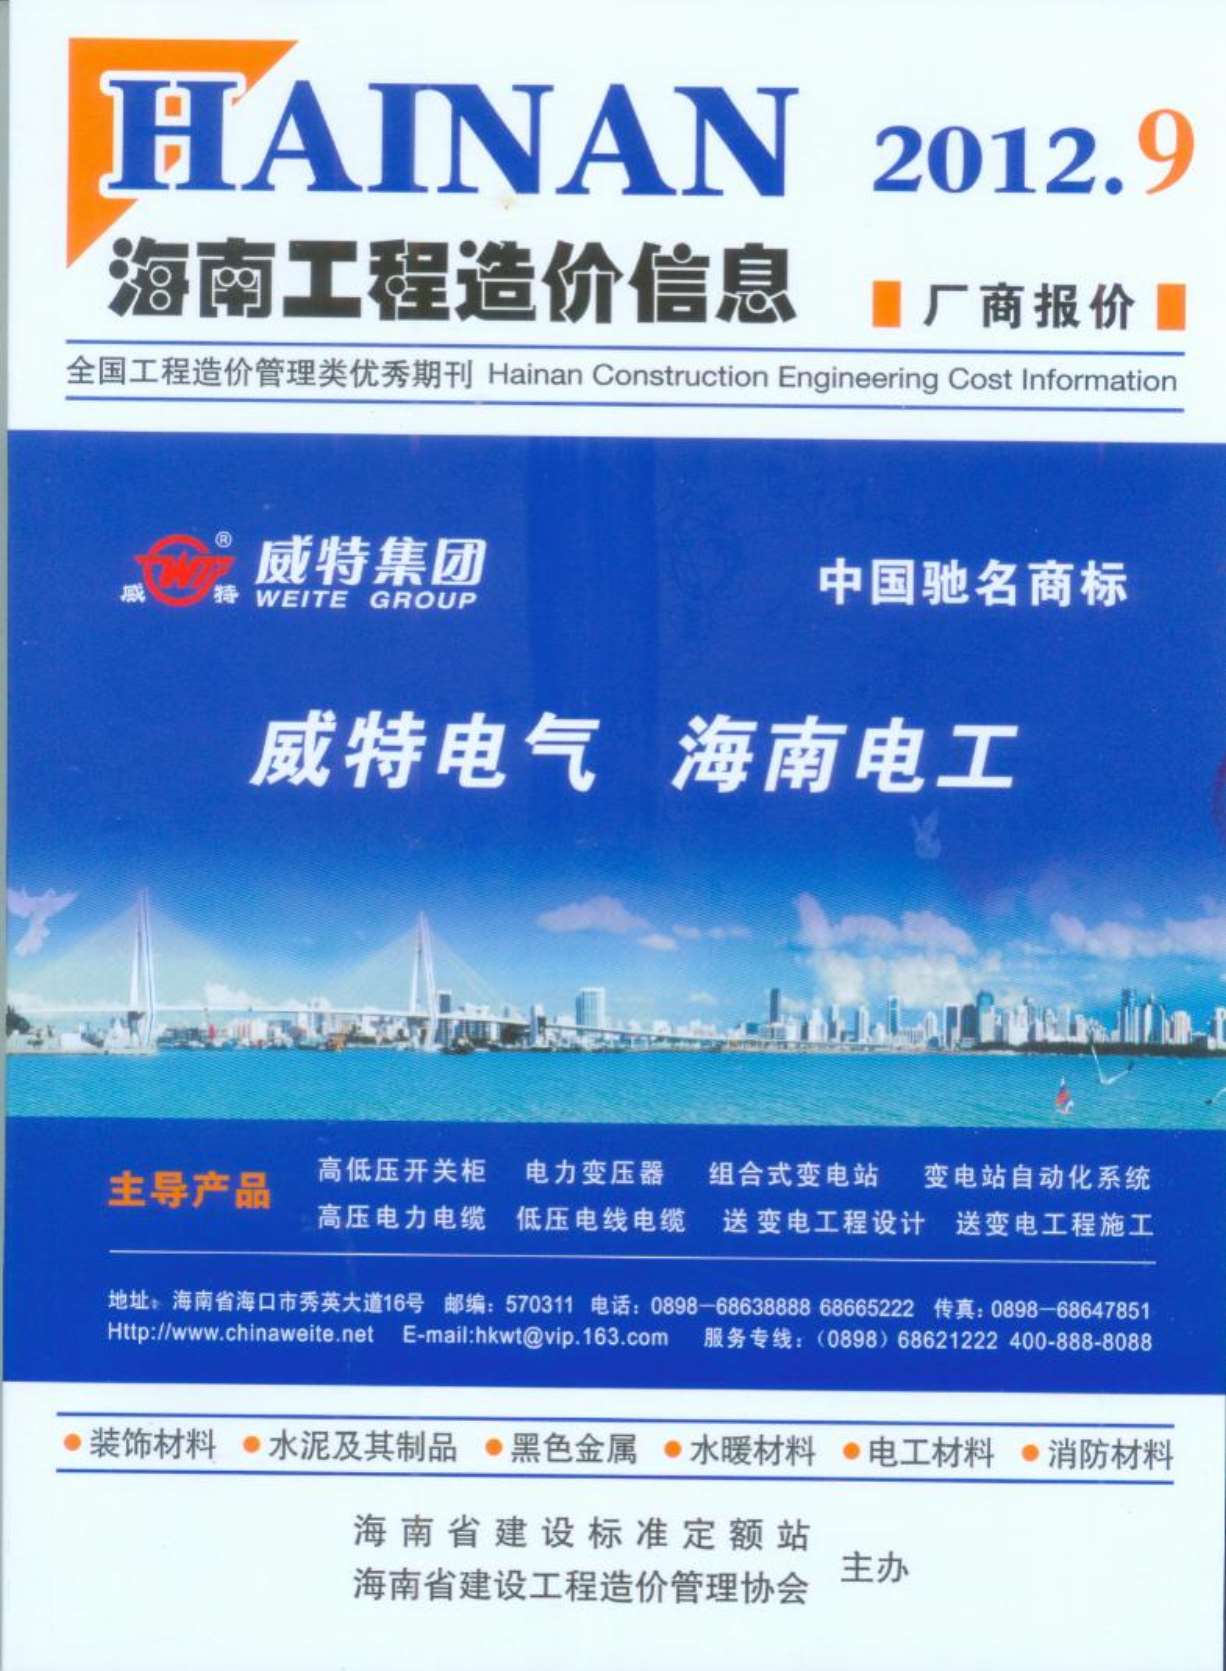 海南省2012年9月造价库数据造价库数据网